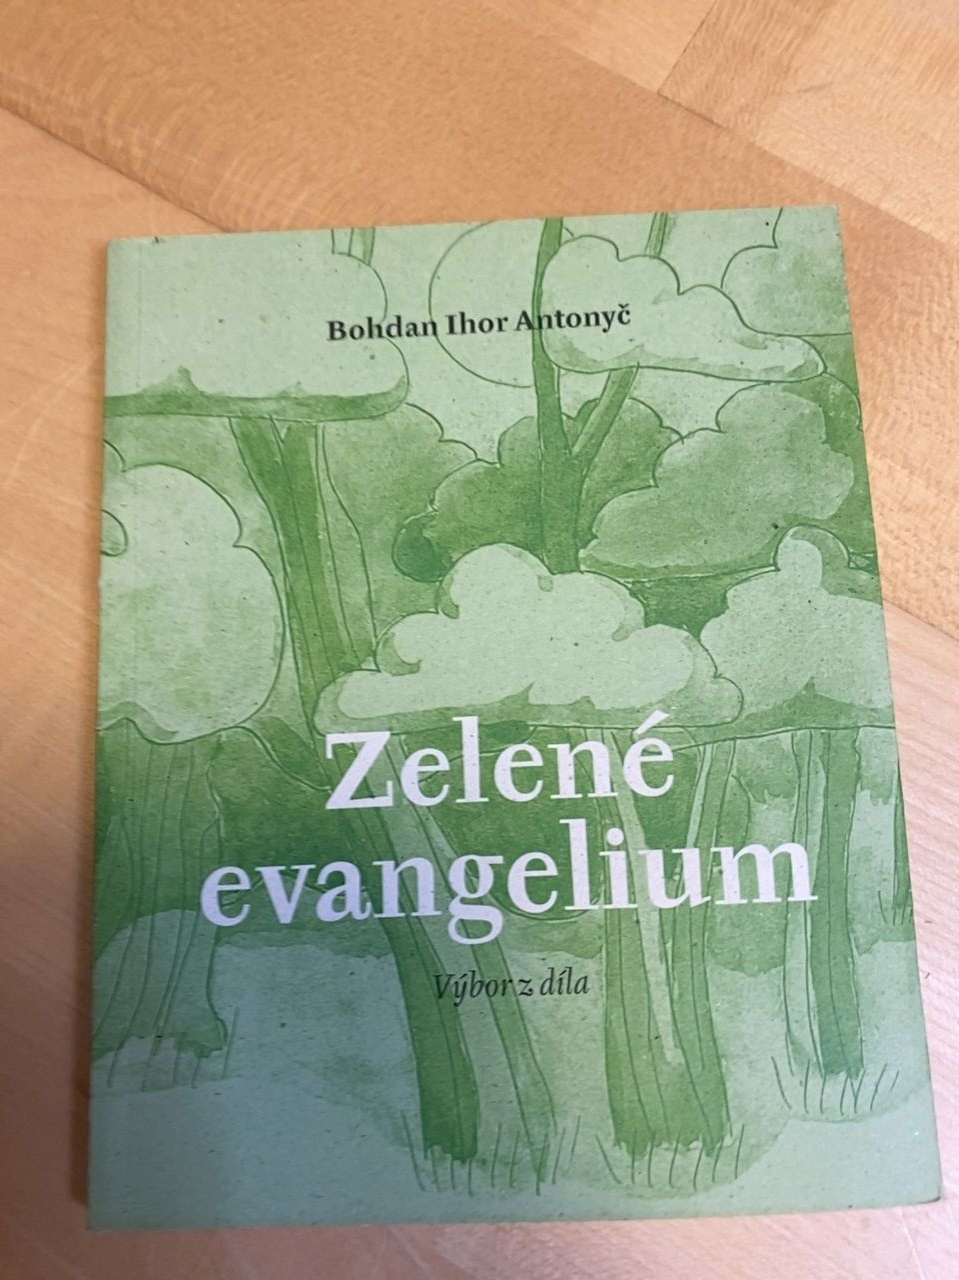 Kniha "Zelené evangelium" Bohdan Ihor Antonye